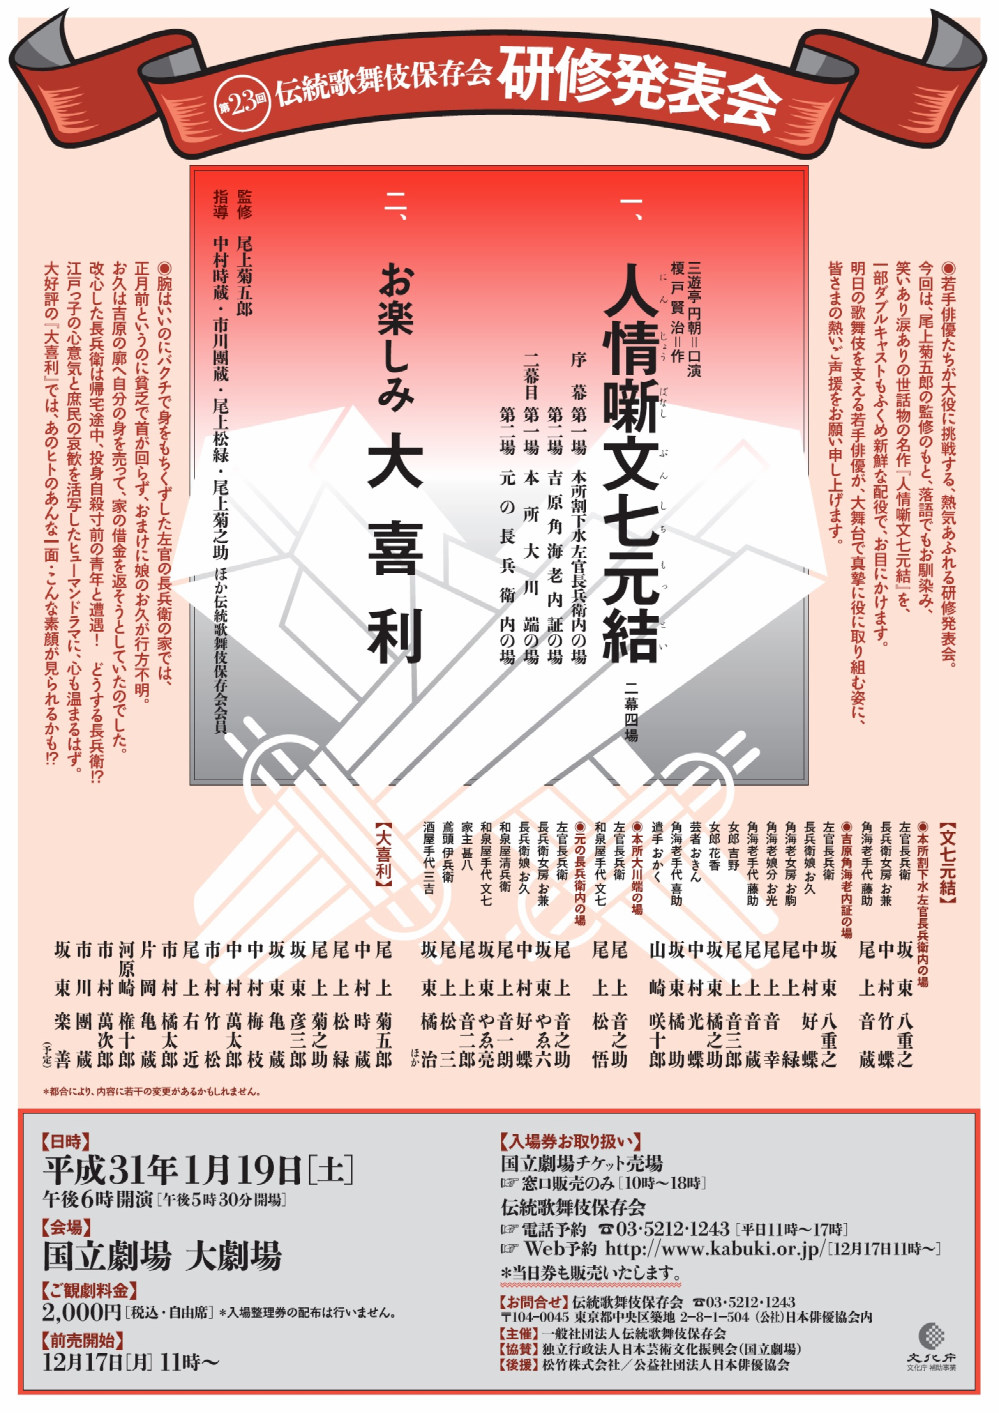 「第二十三回伝統歌舞伎保存会研修発表会」のお知らせ